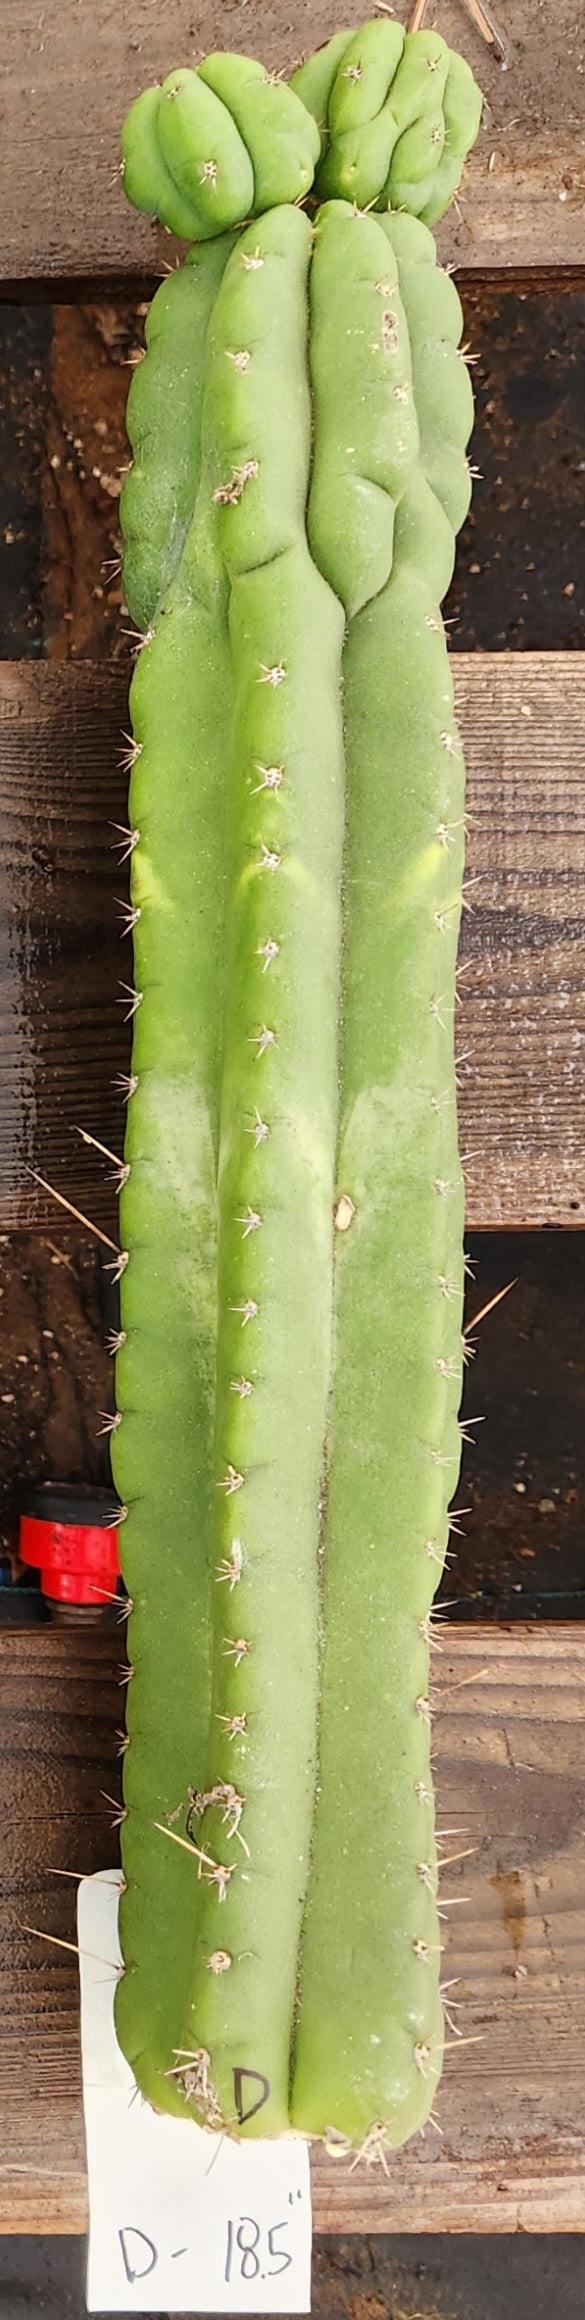 #EC267 EXACT Trichocereus Pachanoi Monstrose TPM Cactus Cuttings-Cactus - Large - Exact-The Succulent Source